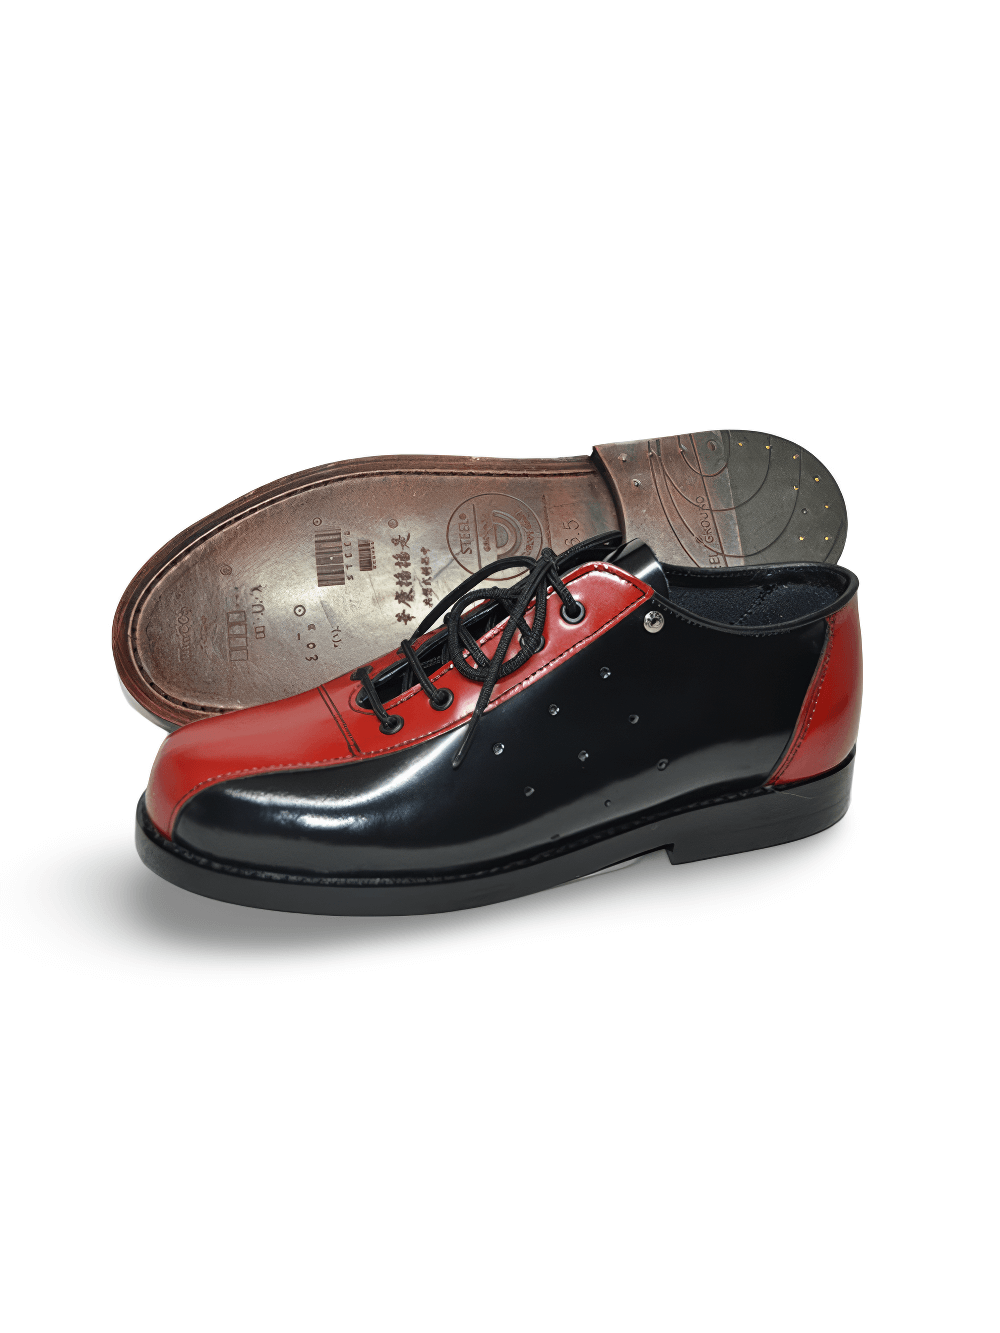 Chaussures de bowling classiques à lacets unisexes avec semelle plate